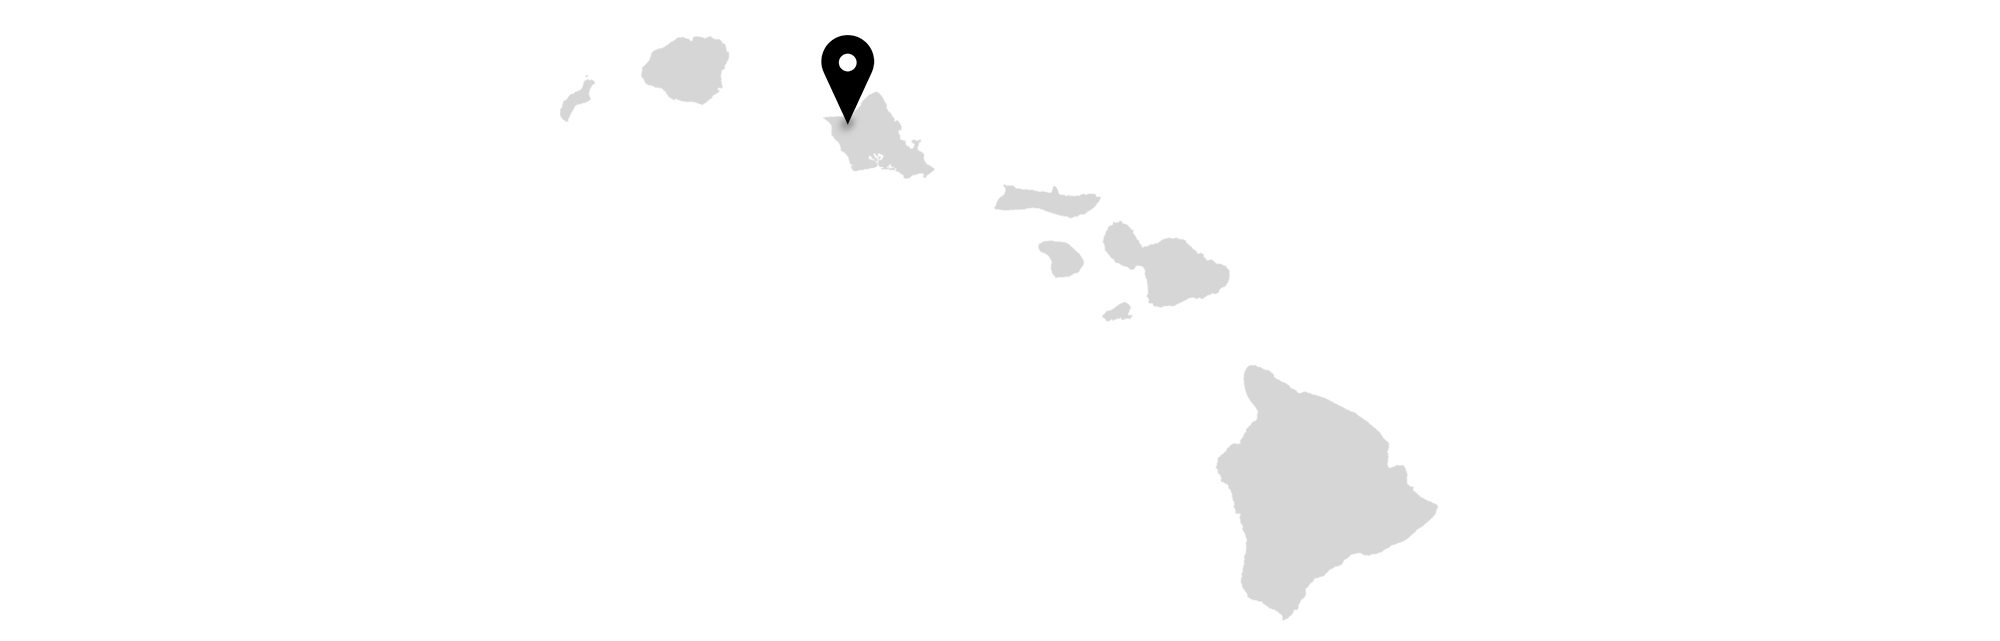 Oahu on Hawaii map